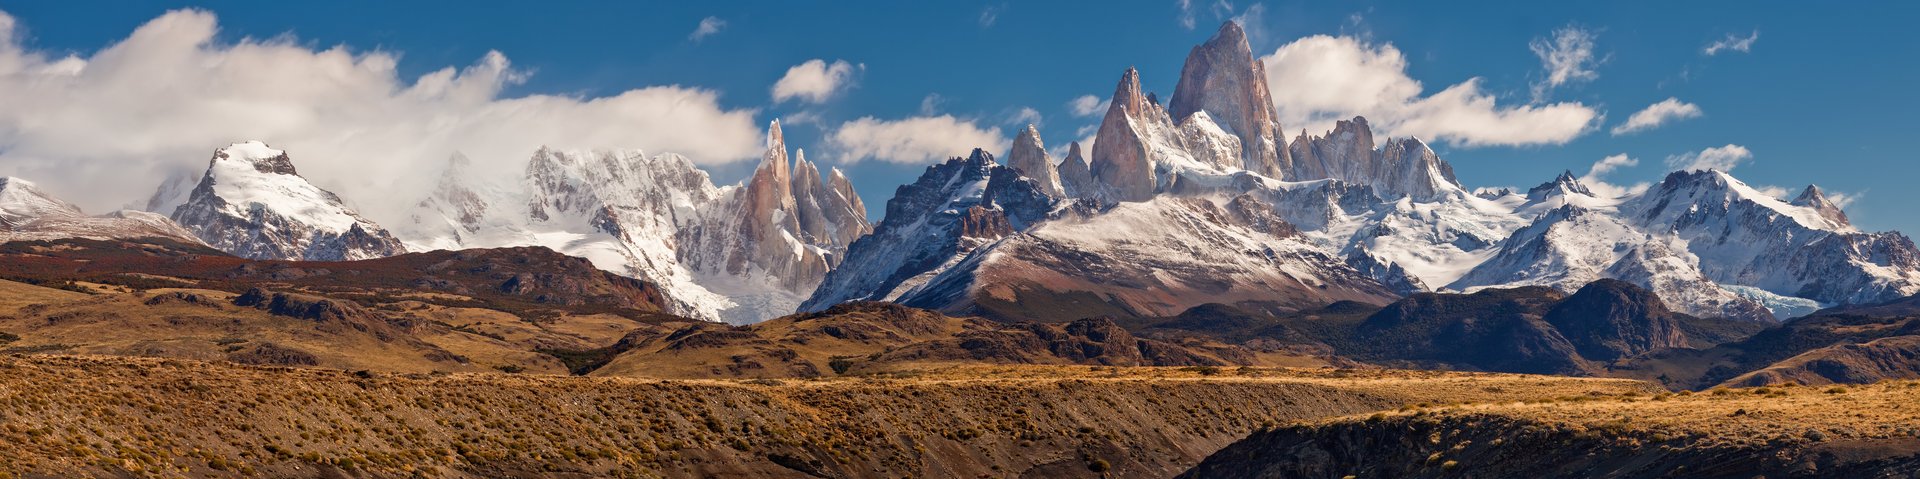 Bergpanorma rund um den Fitz Roy in Patagonien an der Grenze von Argentinien und Chile